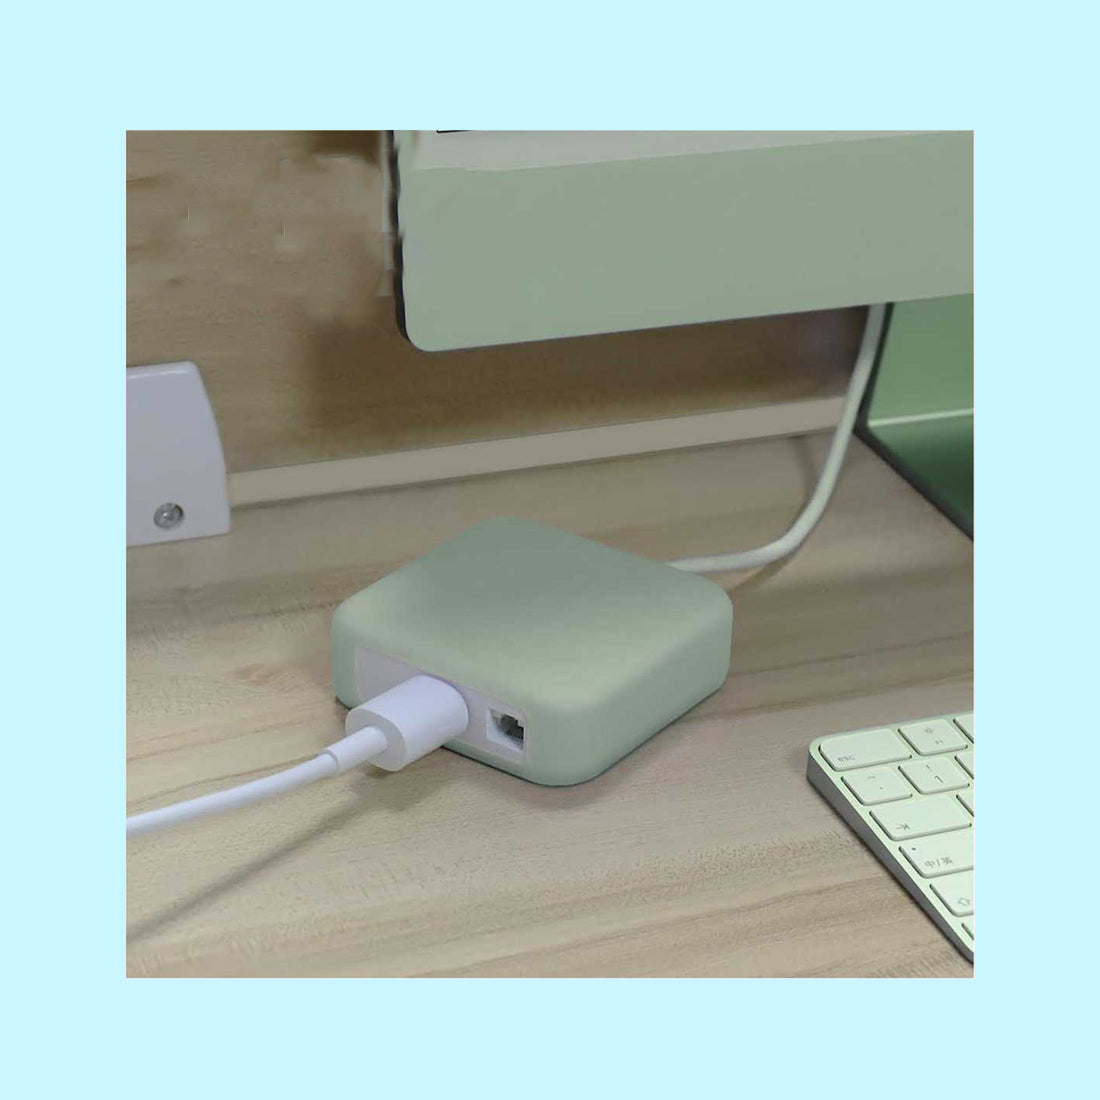 Silicon Cover of iMac 143w Adaptor